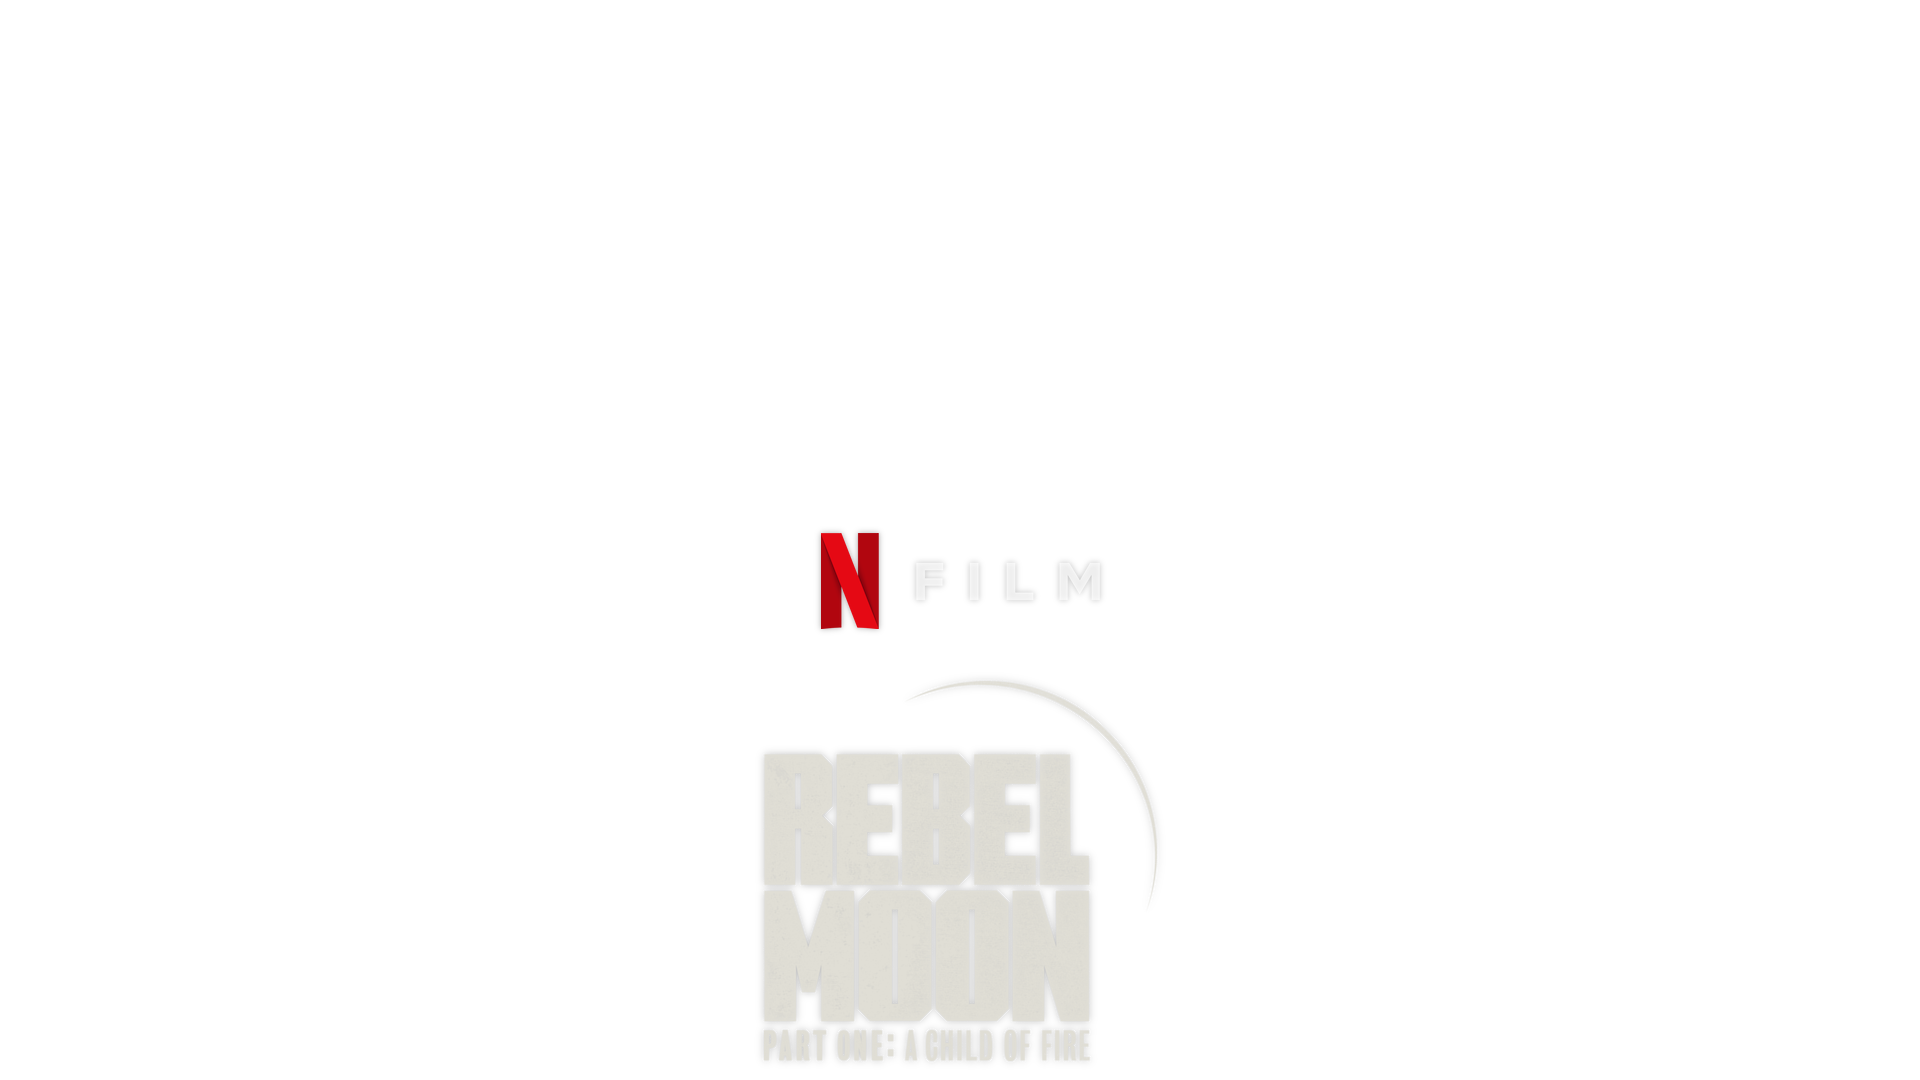 REBEL MOON - Trailer 2 (NEW 2023) Zack Snyder, Netflix Movie HD